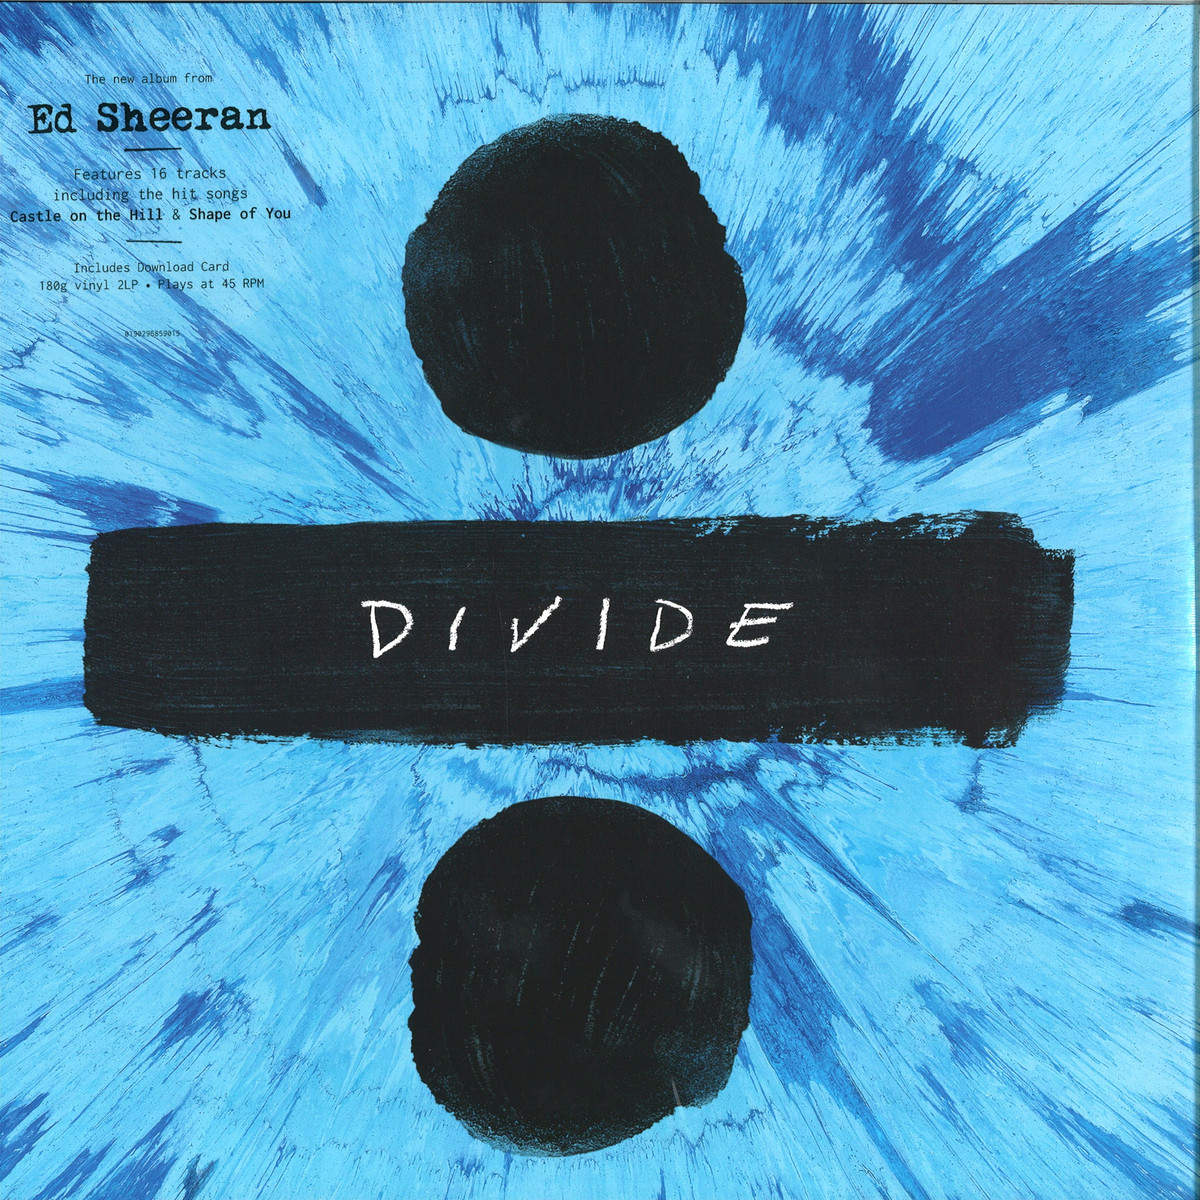 Download divide album by ed sheeran mp3